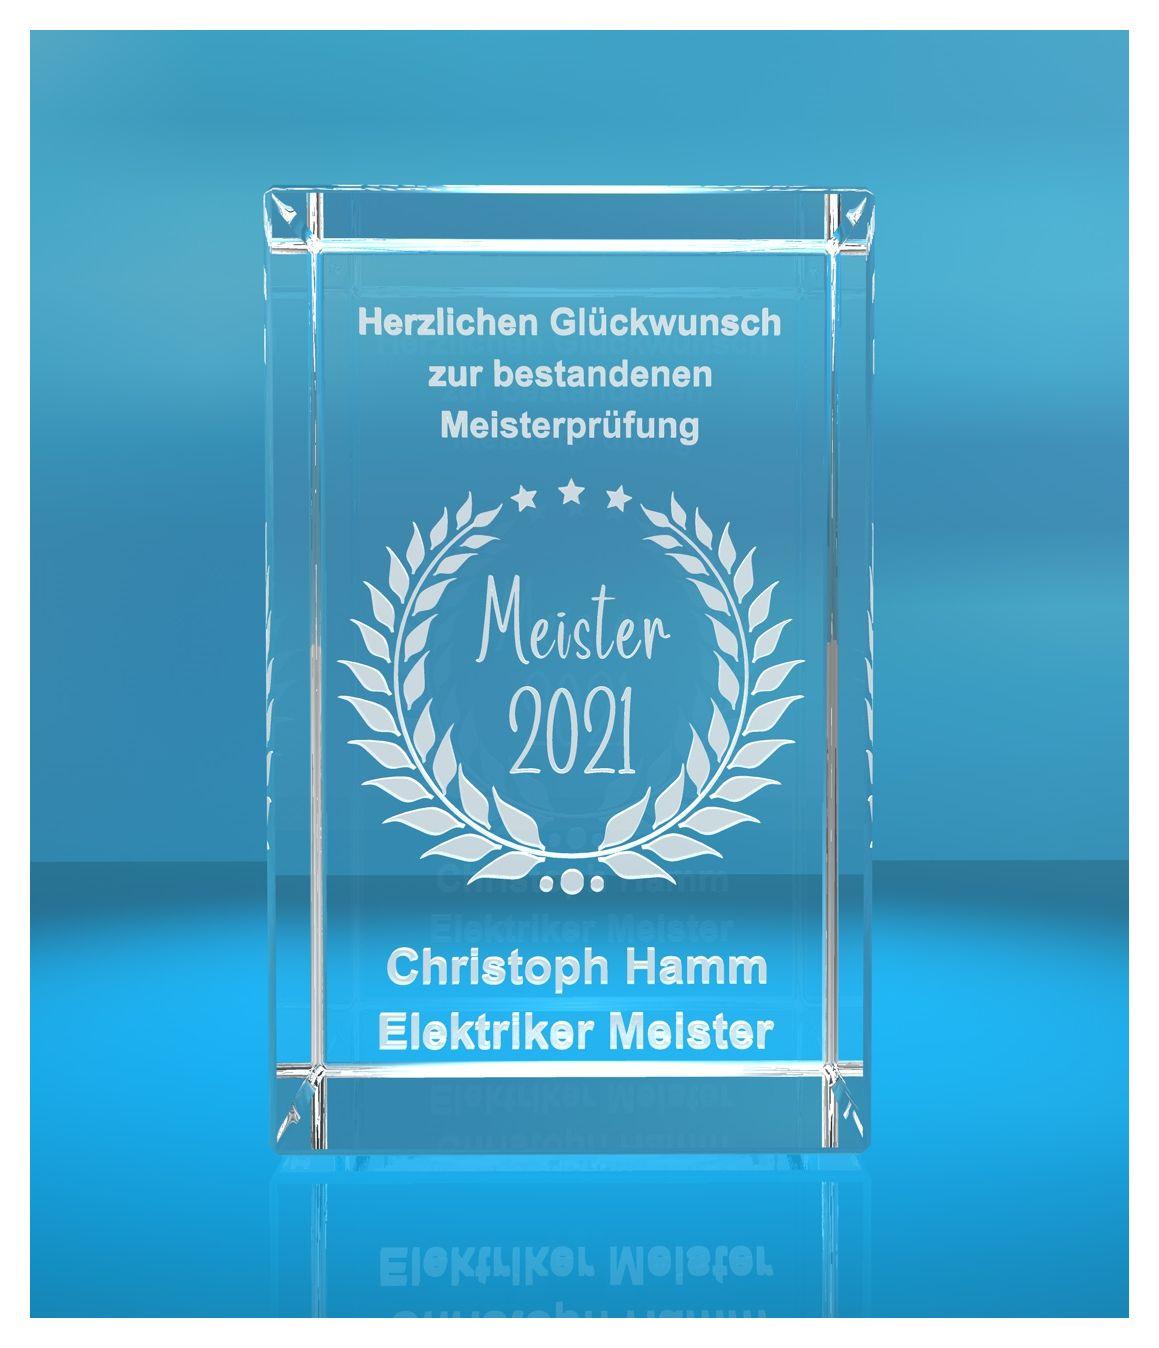 3D Glasquader   Meister 2021   Glückwunsch mit Wunschtext   Geschenk zur Meisterprüfung